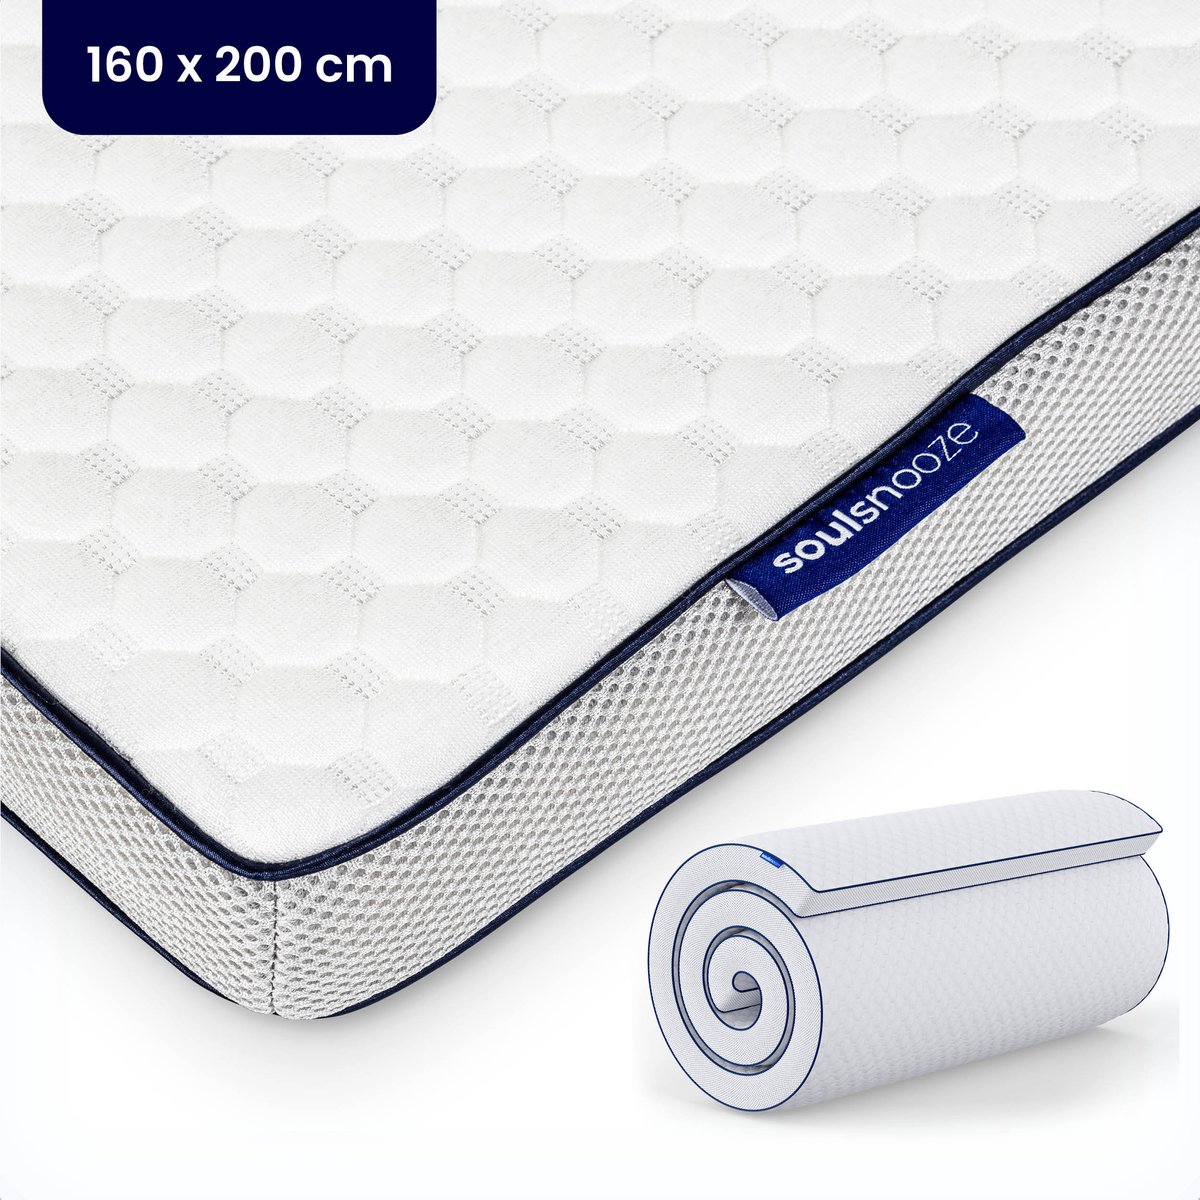 Soulsnooze® - DuoComfort Premium Topper 160x200 cm - Topdekmatras - Aanpasbaar Design - 3D Air Mesh - Traagschuim - Memory Foam Matras - 30 Nachten Proefslapen - Wasbare Hoes - Anti Allergie